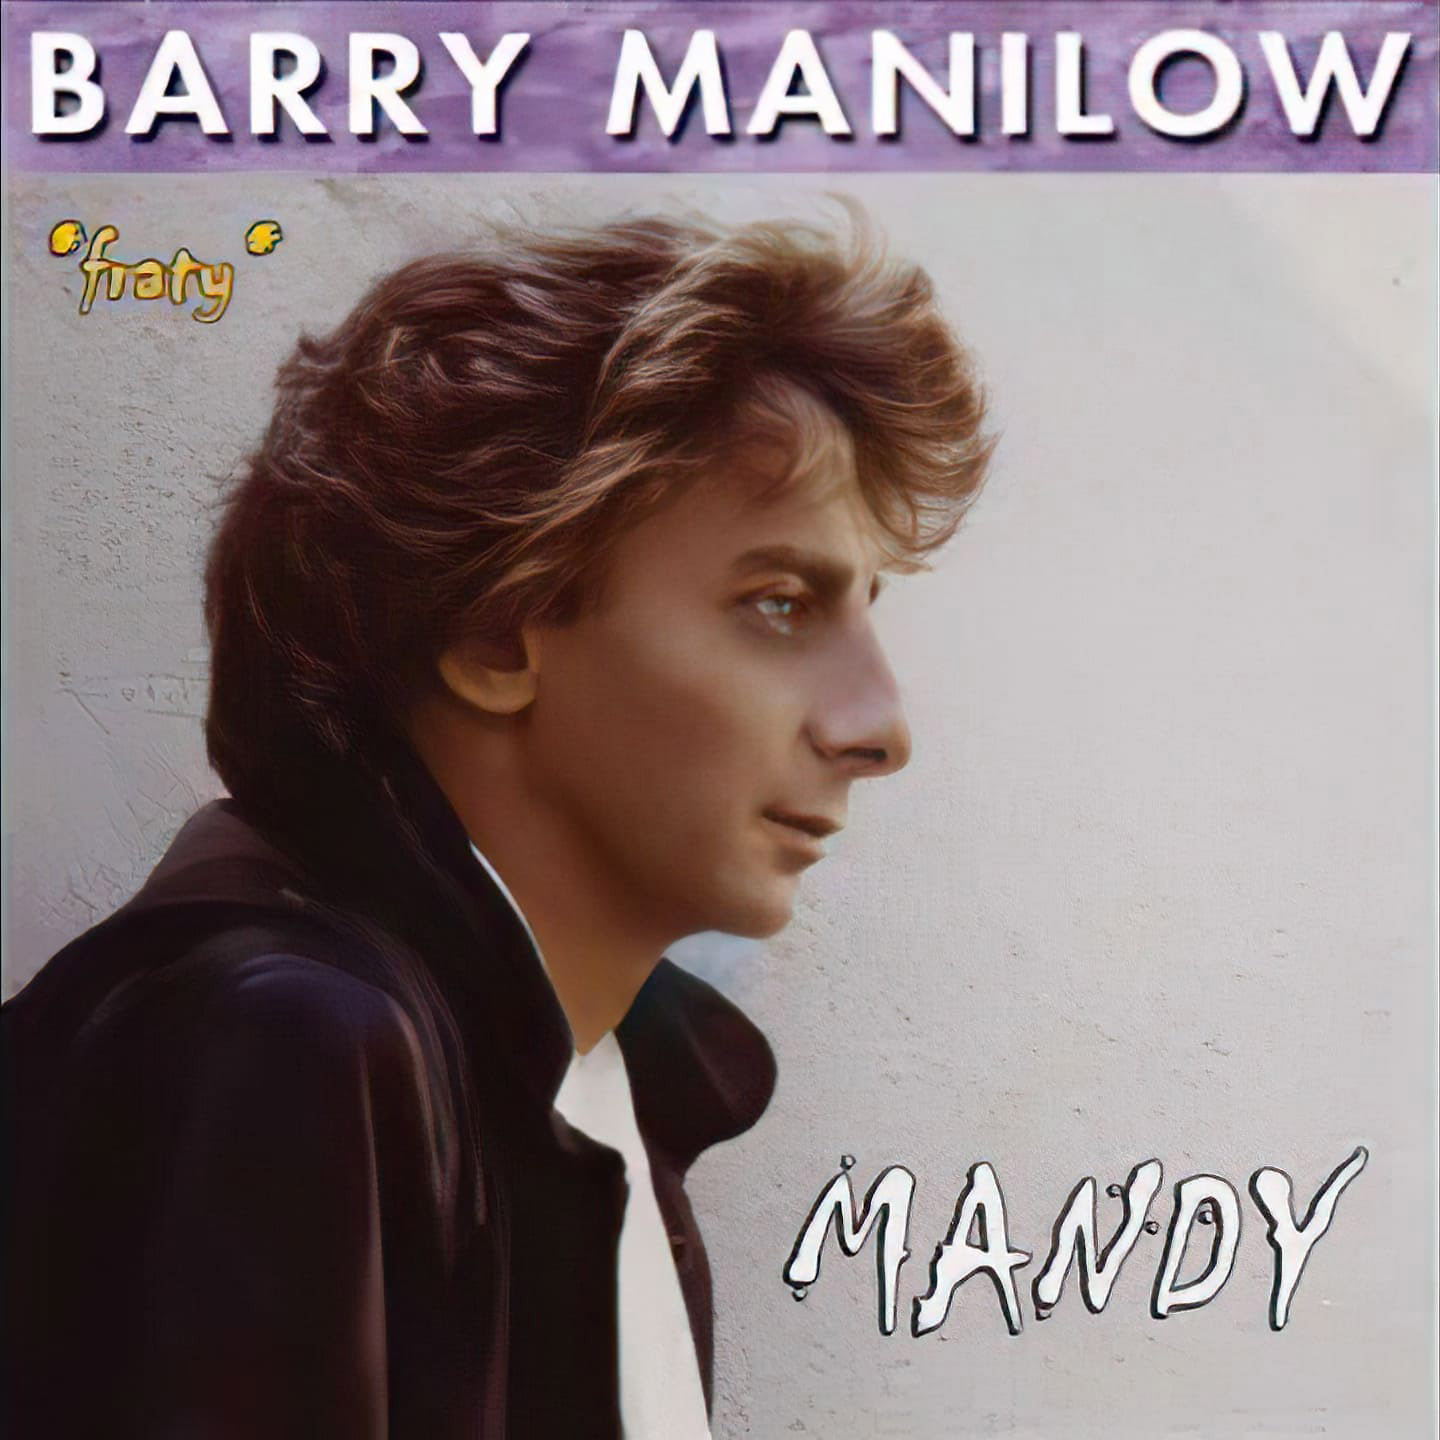 Mandy De Barry Manilow